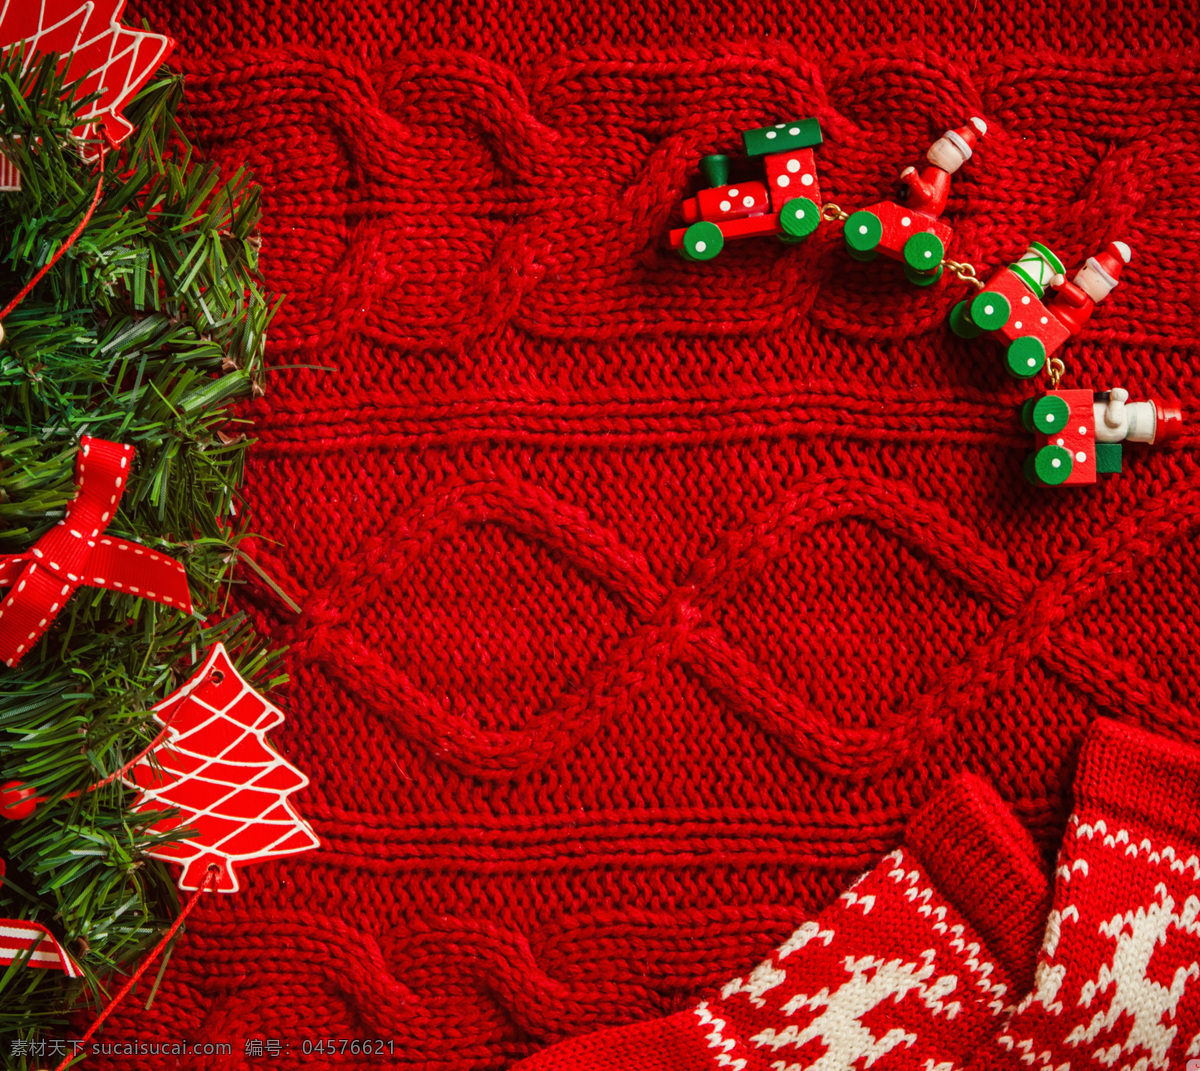 红色 针织 背景 袜子 绿色 叶子 小火车 圣诞树 背景素材